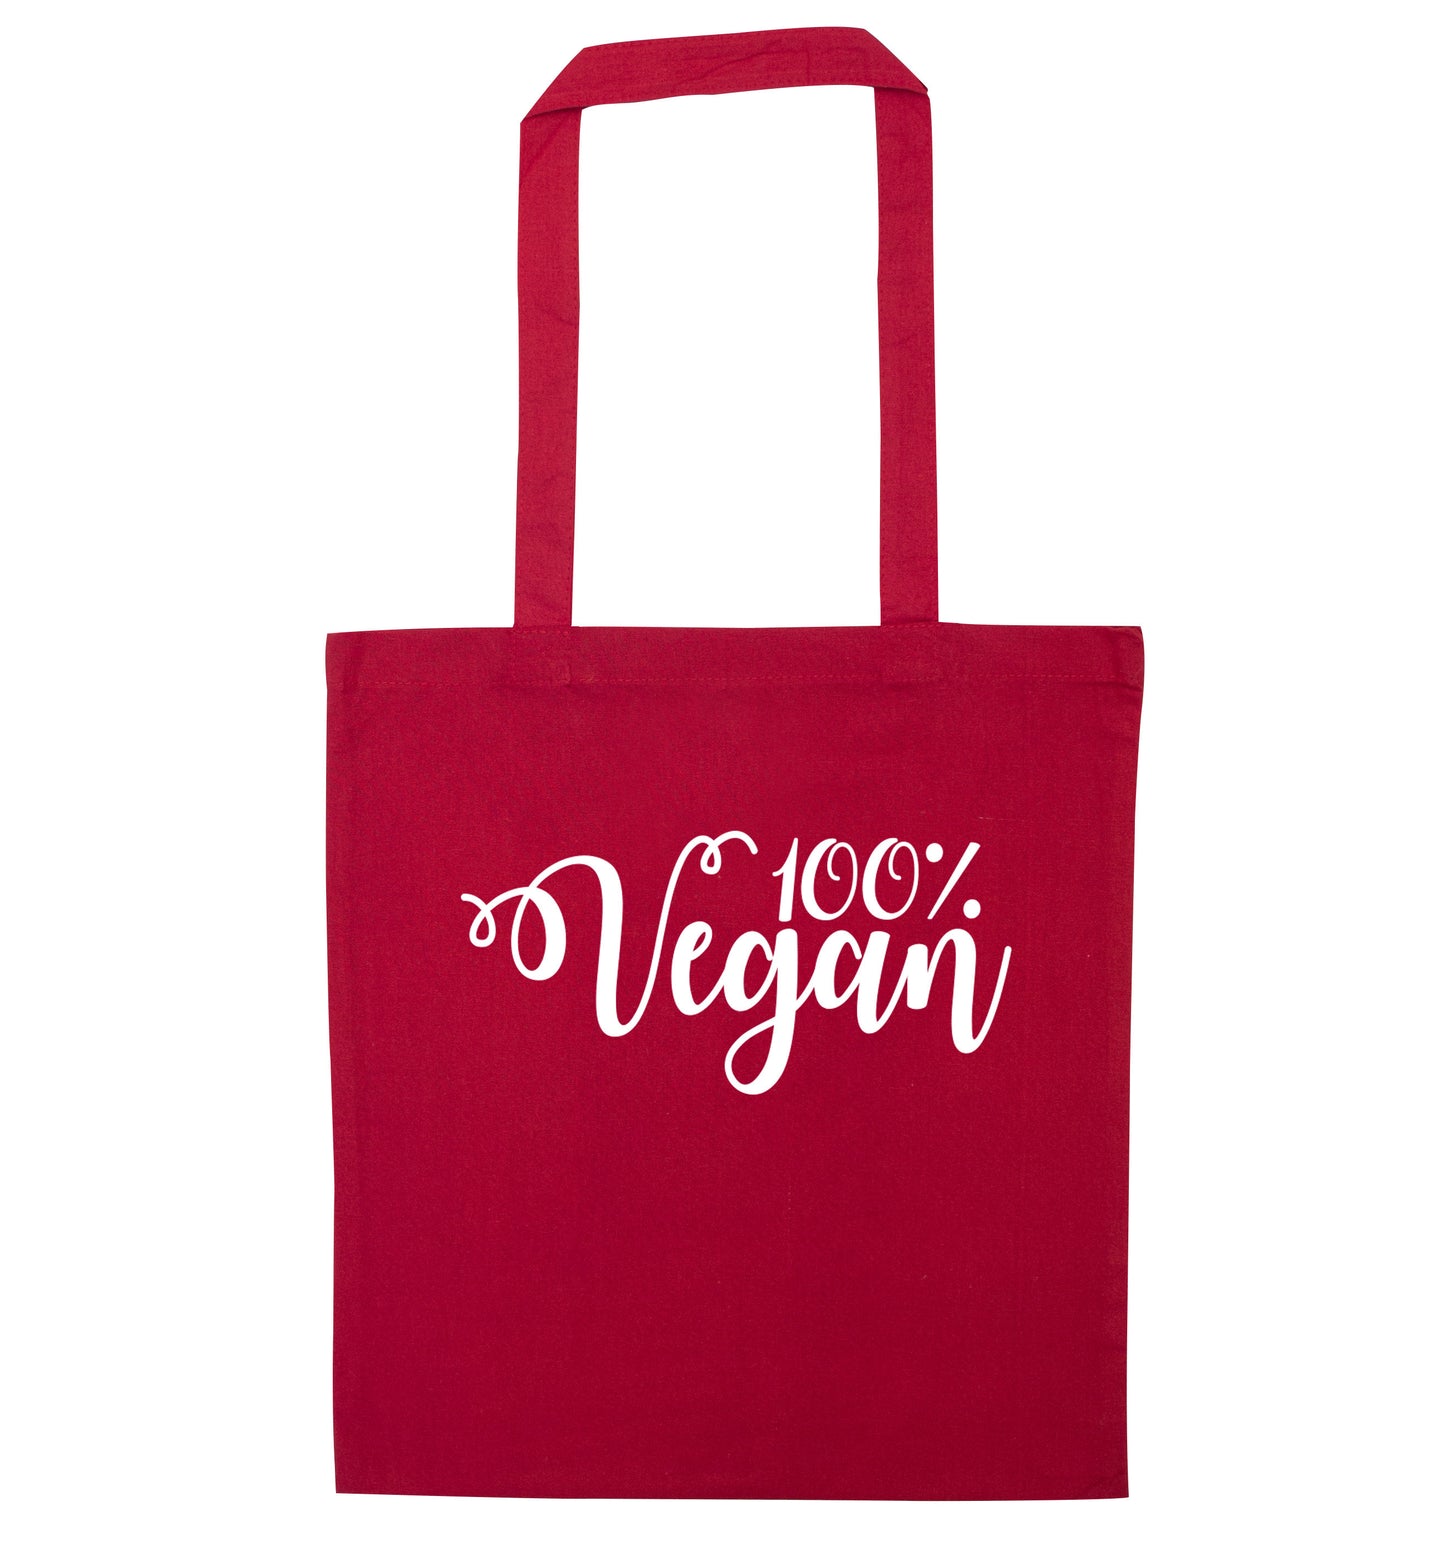 100% Vegan red tote bag